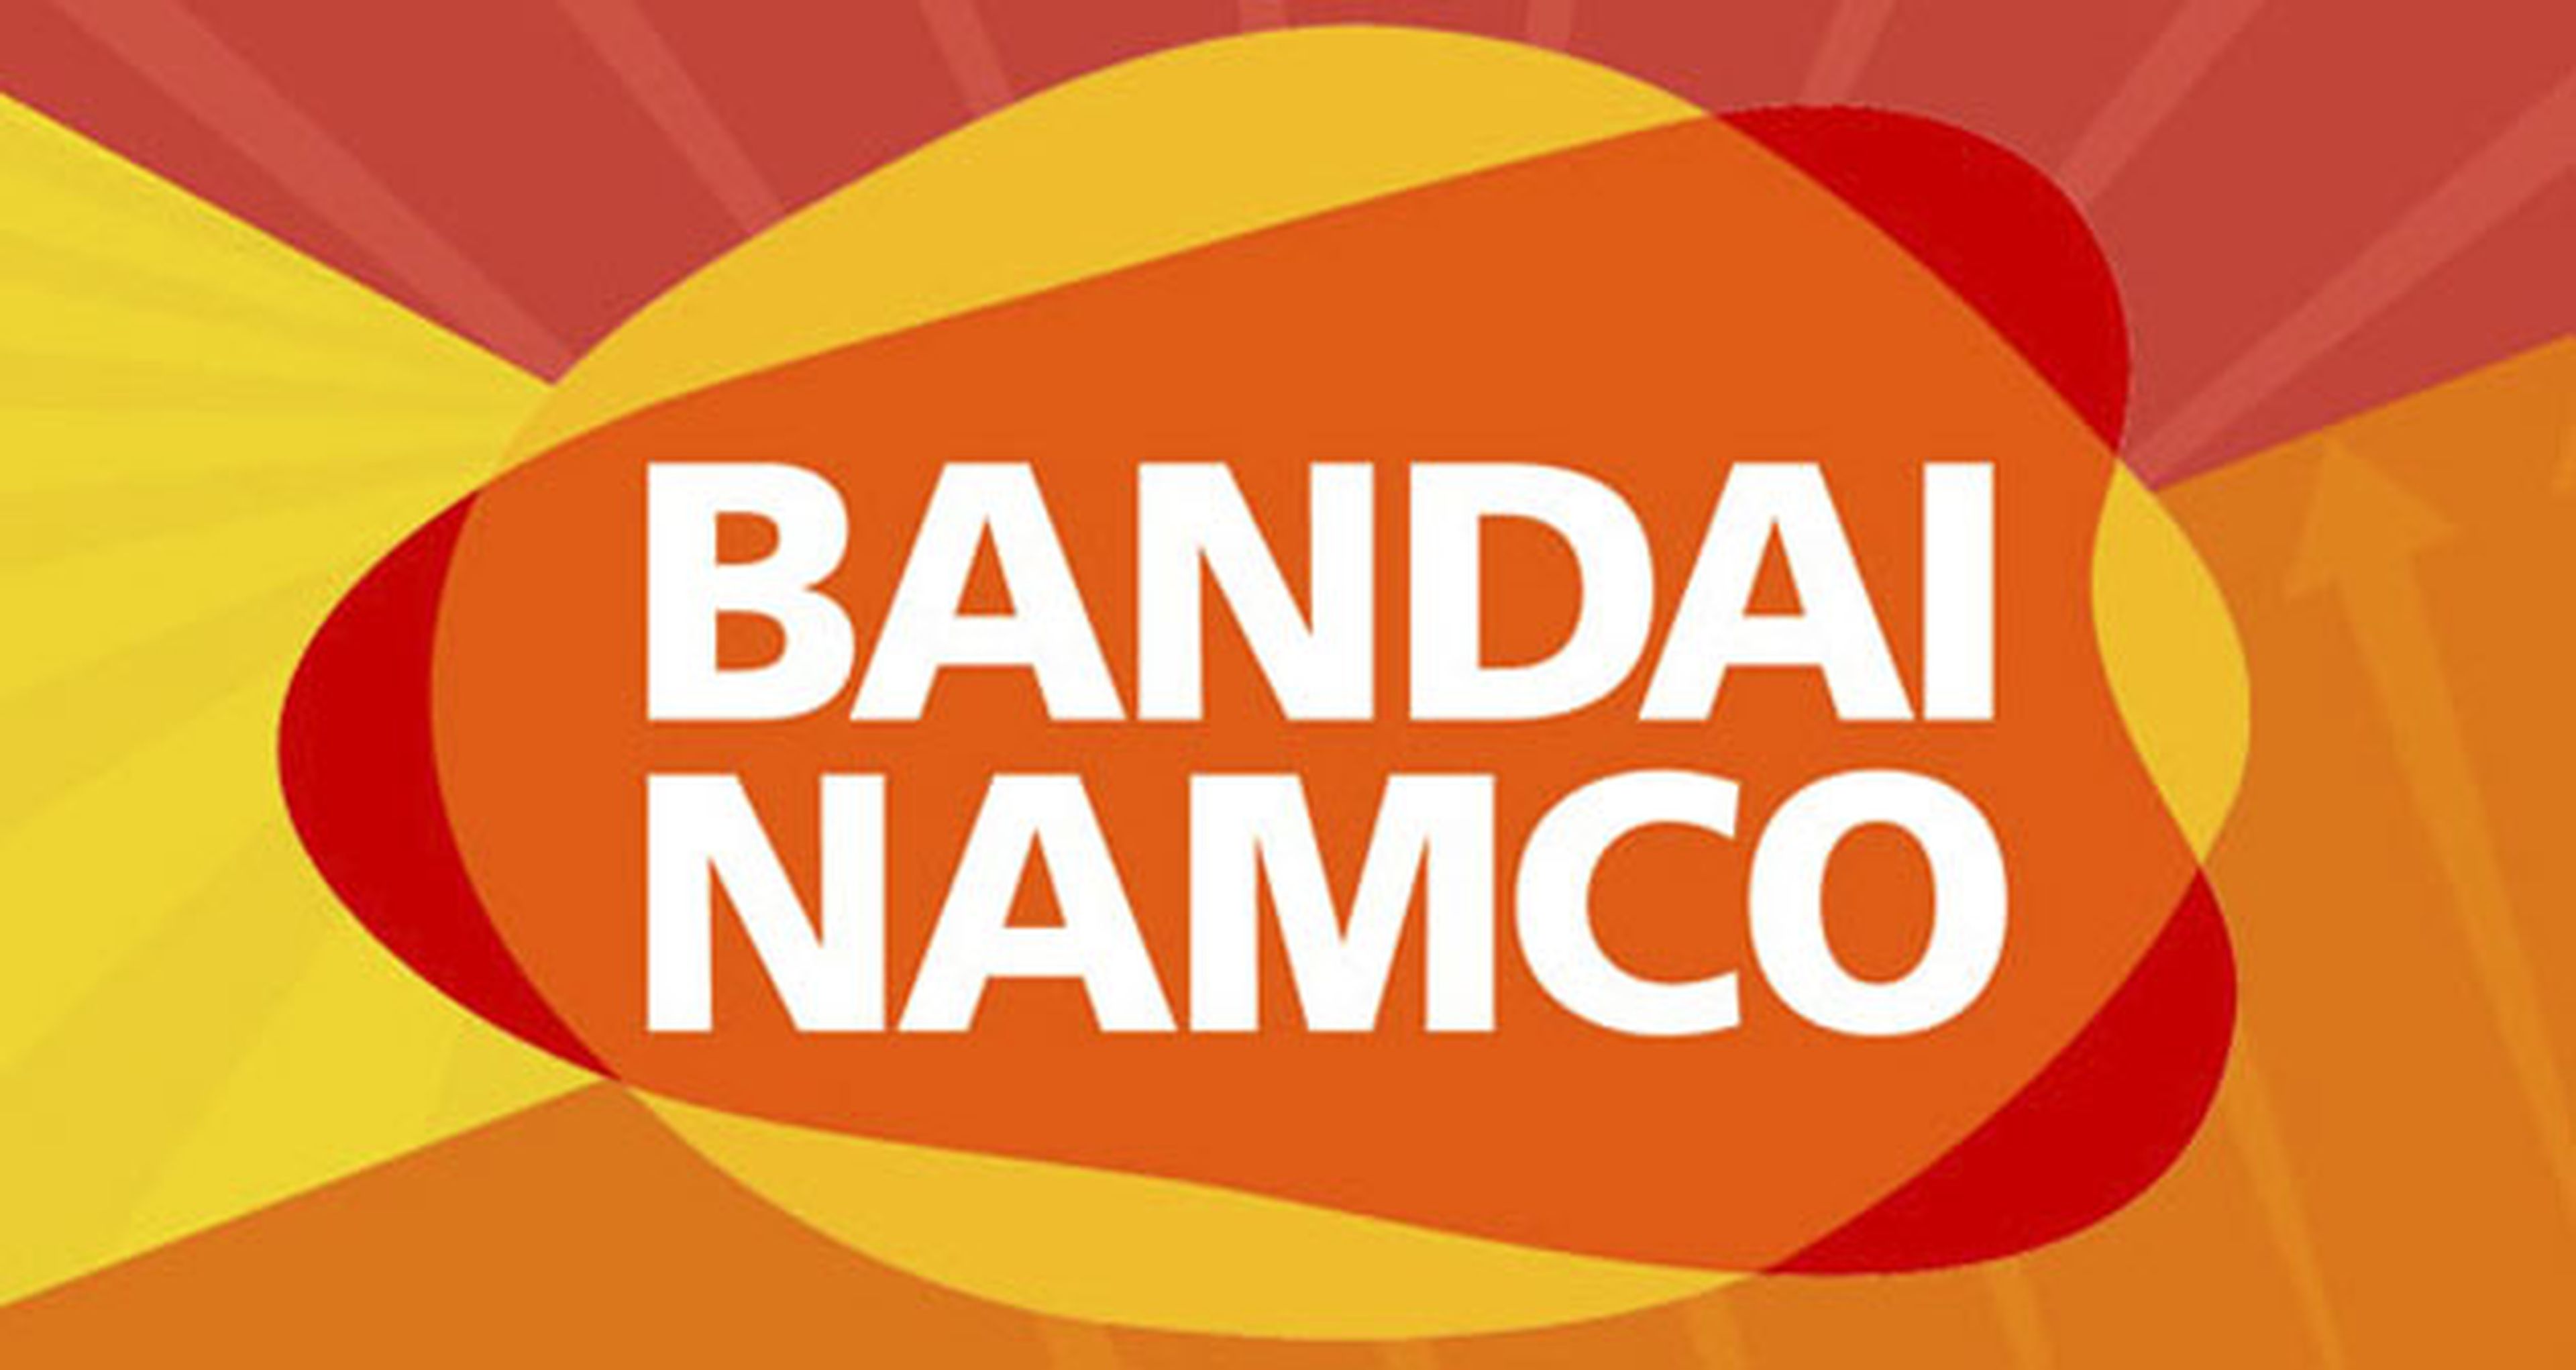 Bandai Namco distribuirá los juegos de FX Interactive